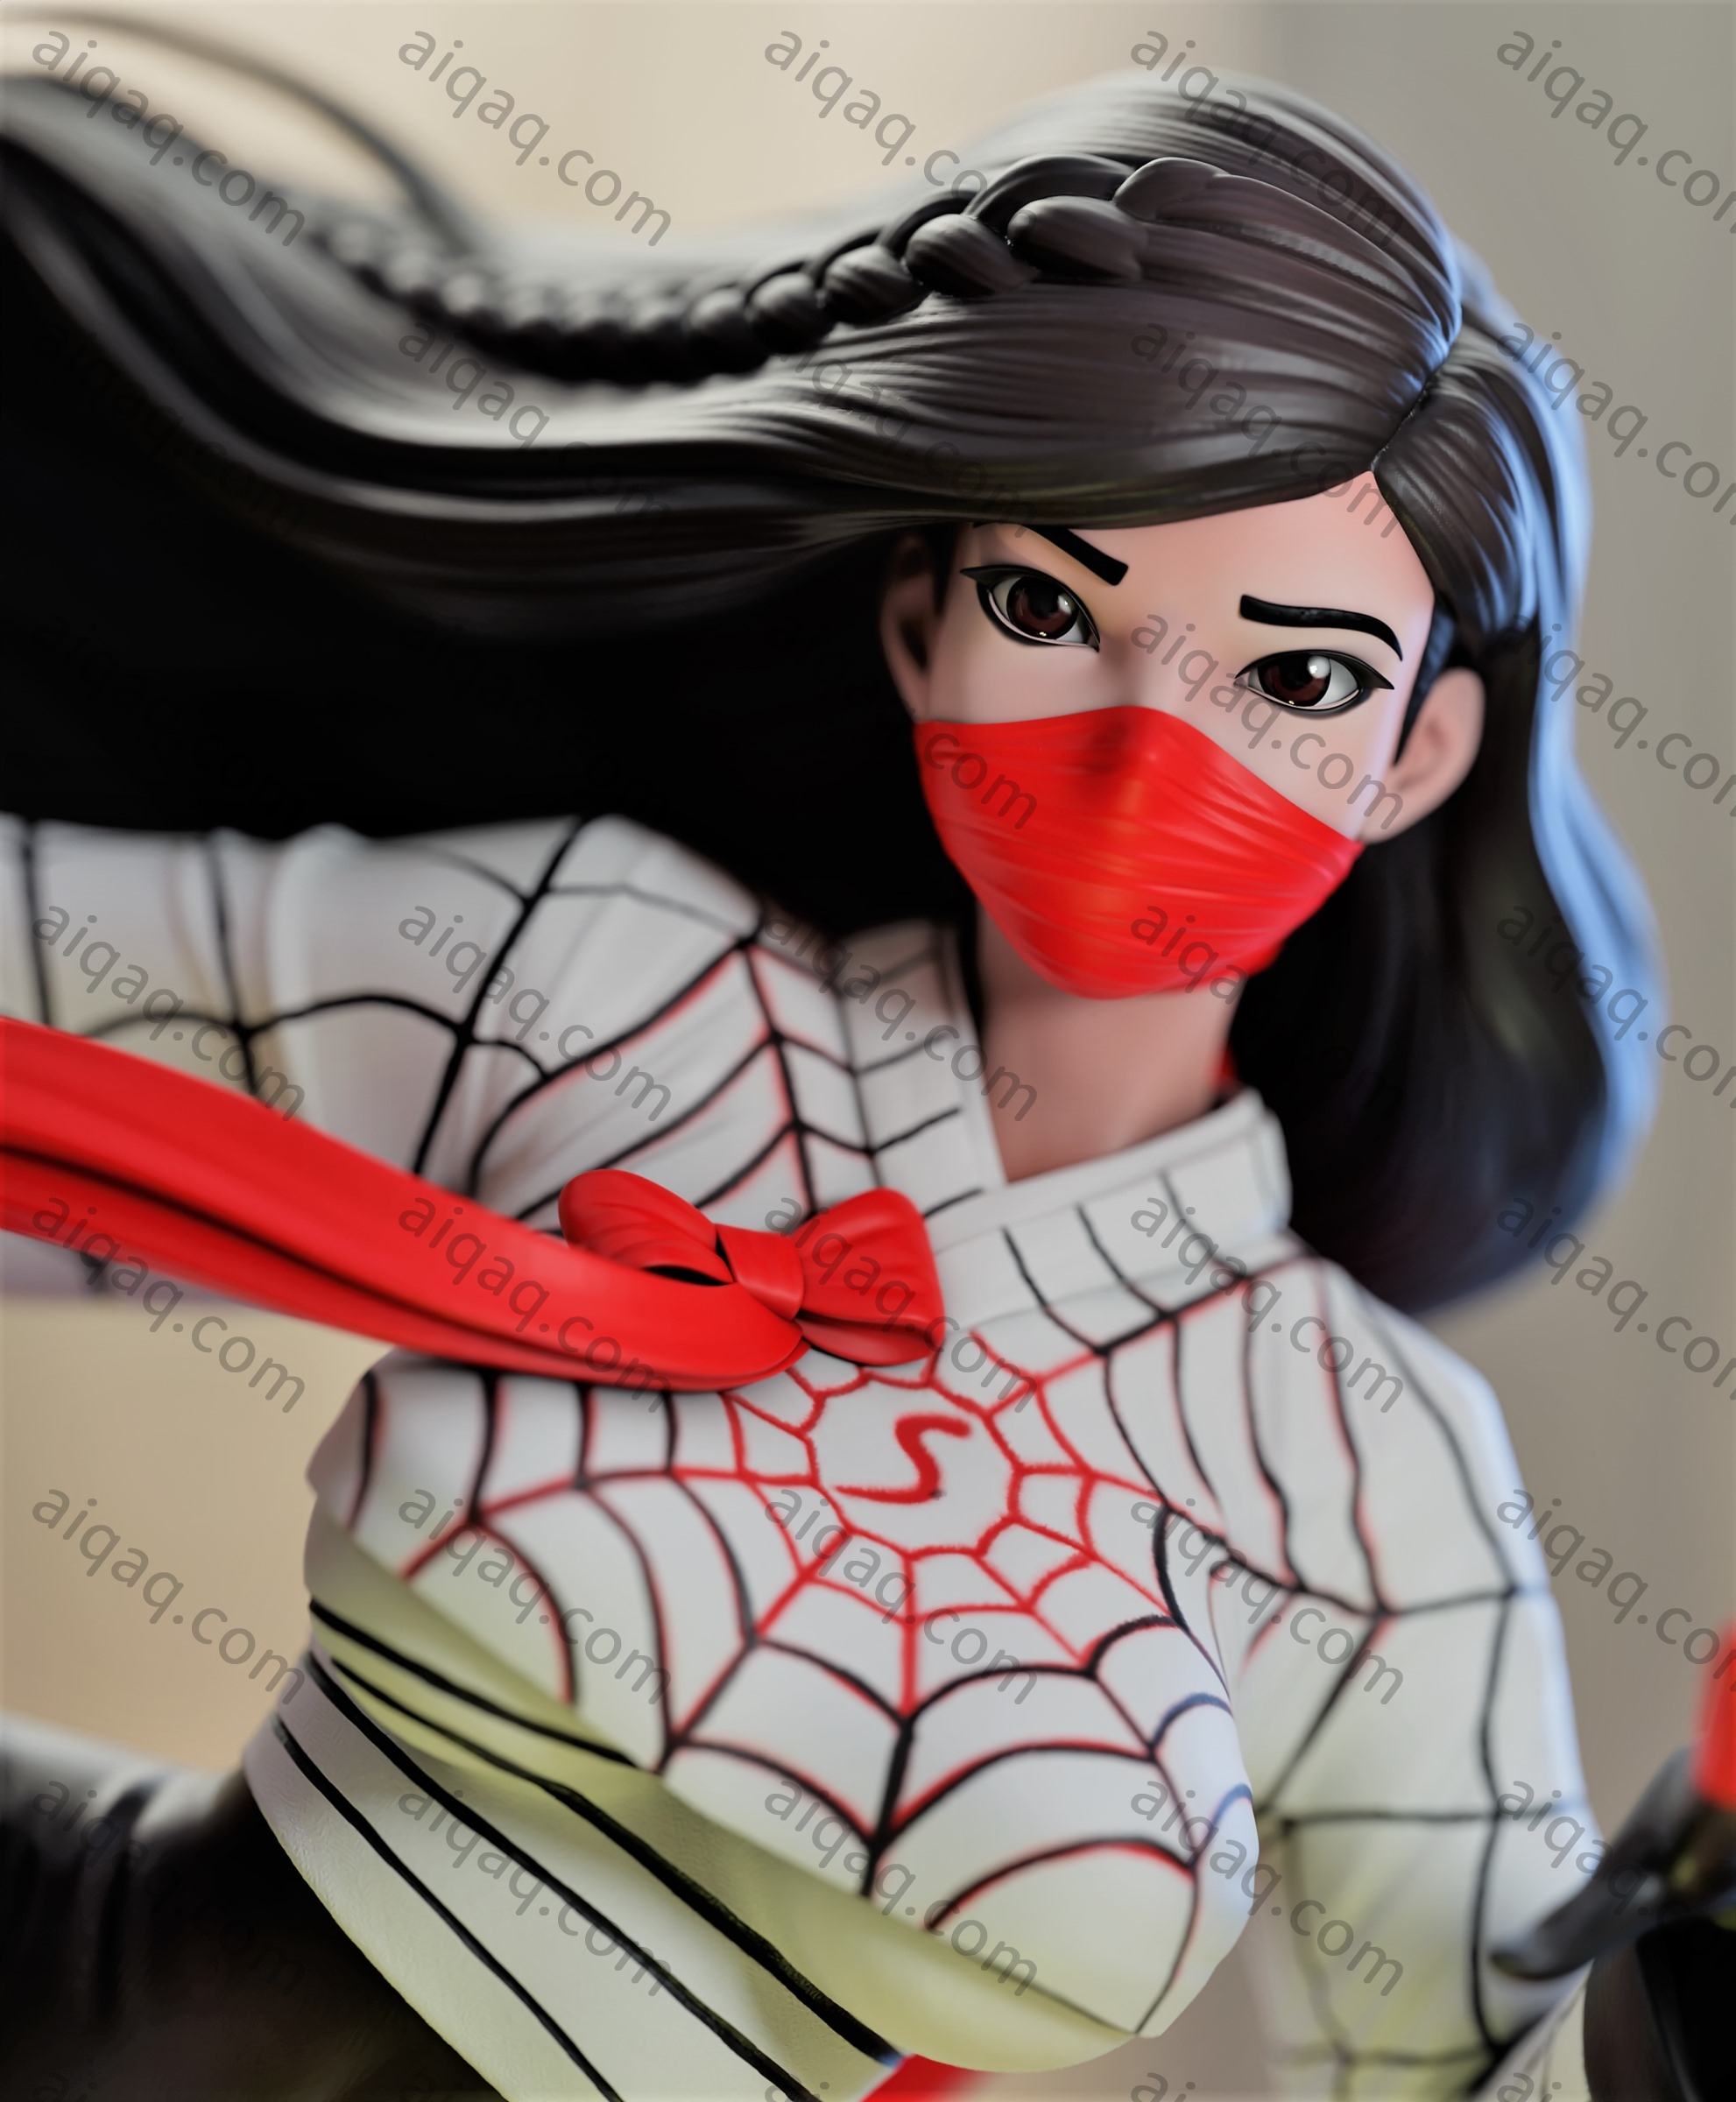 蜘蛛女孩 蜘蛛侠-STL下载网_3D打印模型网_3D打印机_3D模型库